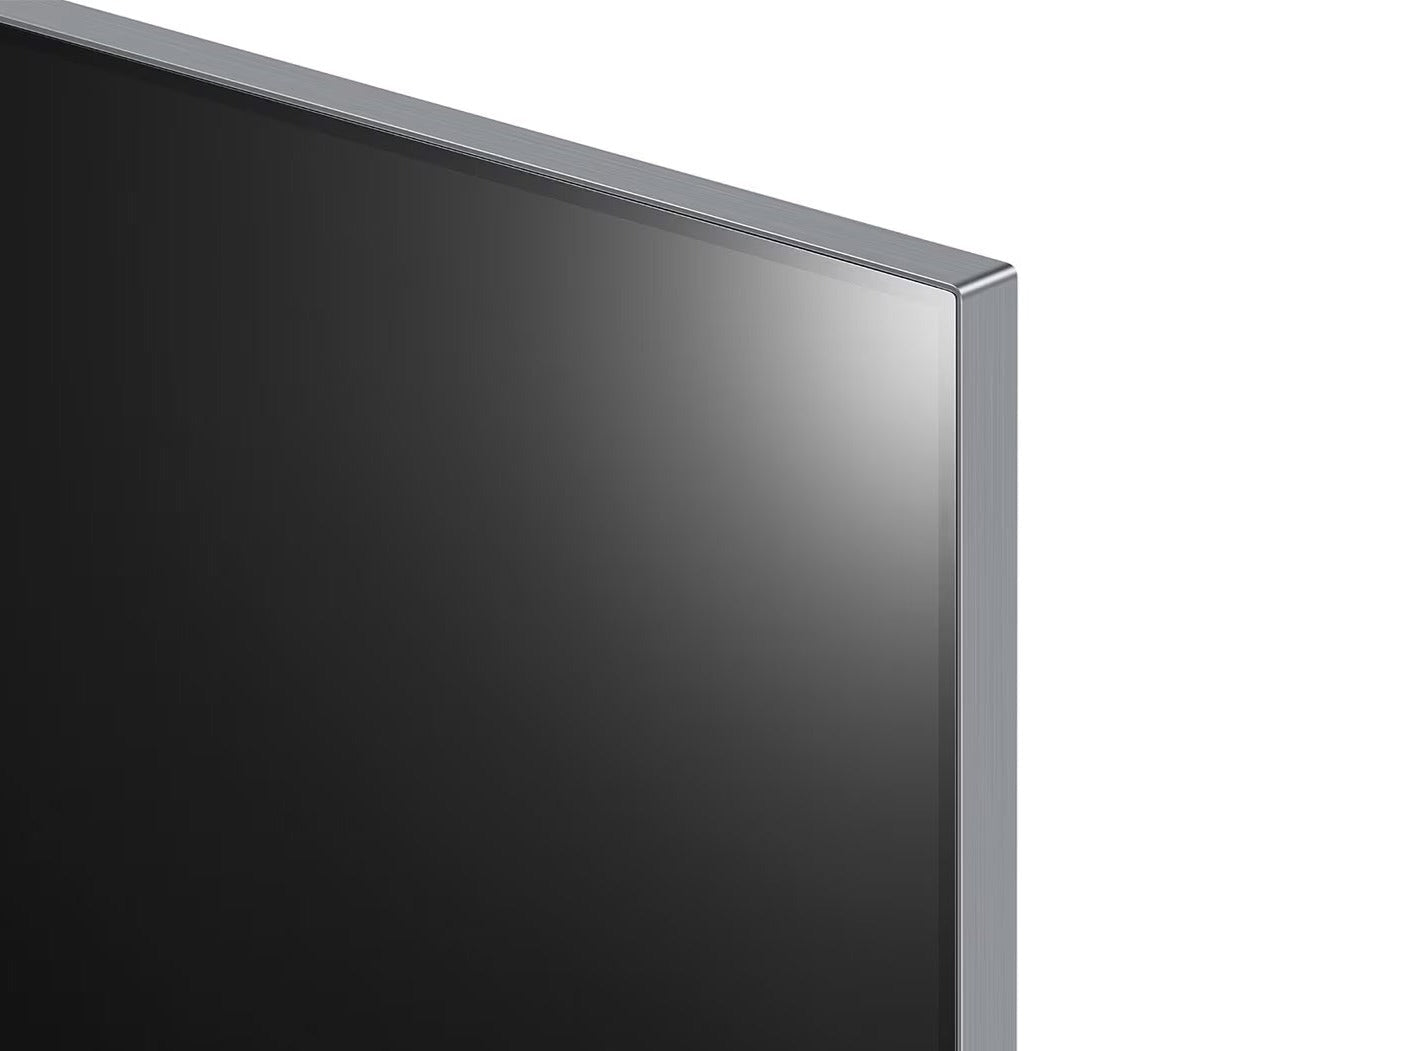 LG 55G2 OLED evo televízió jobb felső keret ráközelítve.